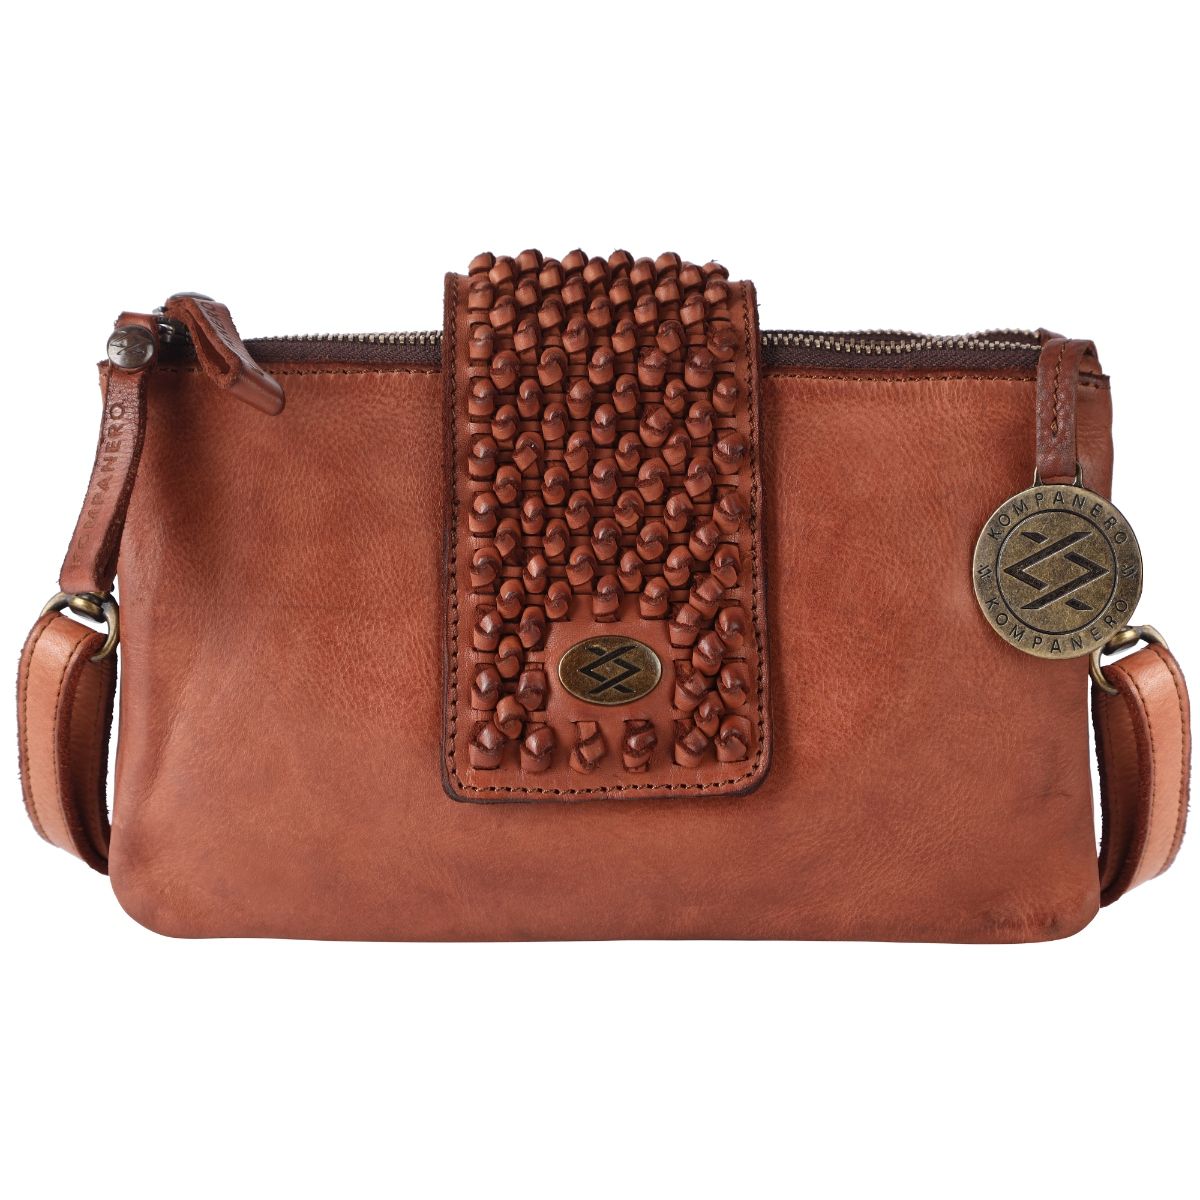 Buy Kompanero Reenie  the Handbag for Women Online at Best Price   kompanero